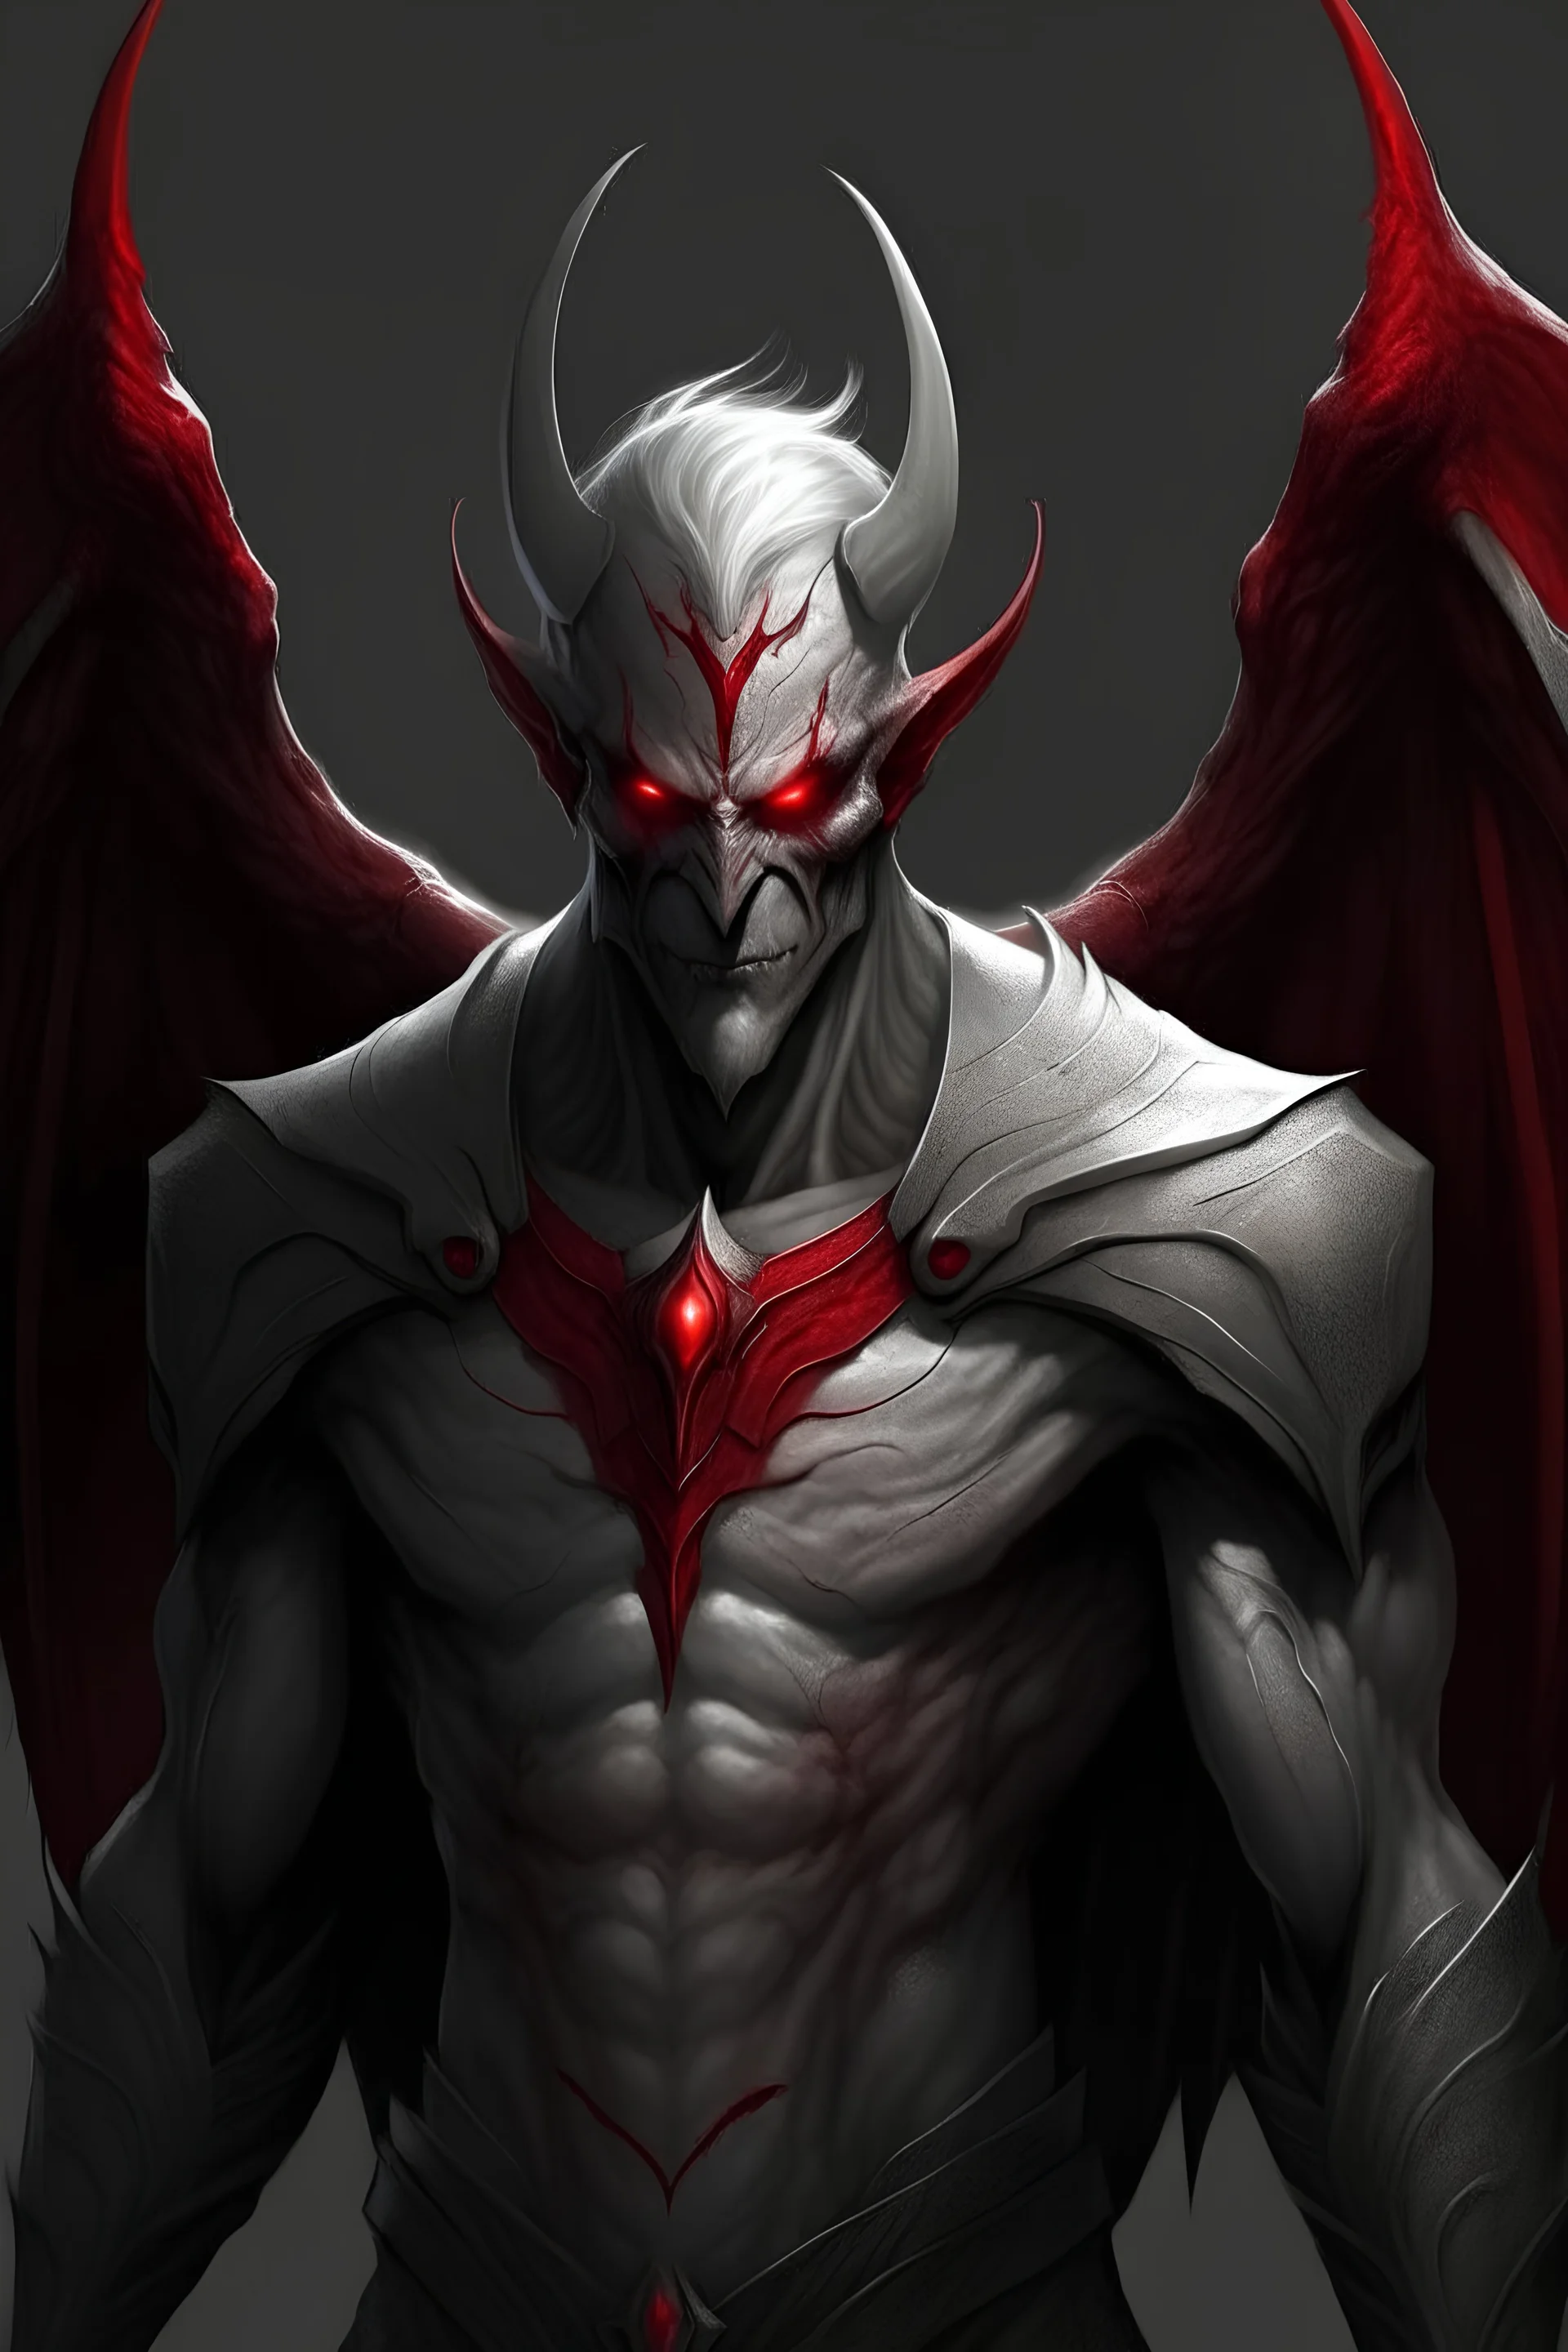 Demon, male, five eyes, wings, grey skin, red eyes, red clothing